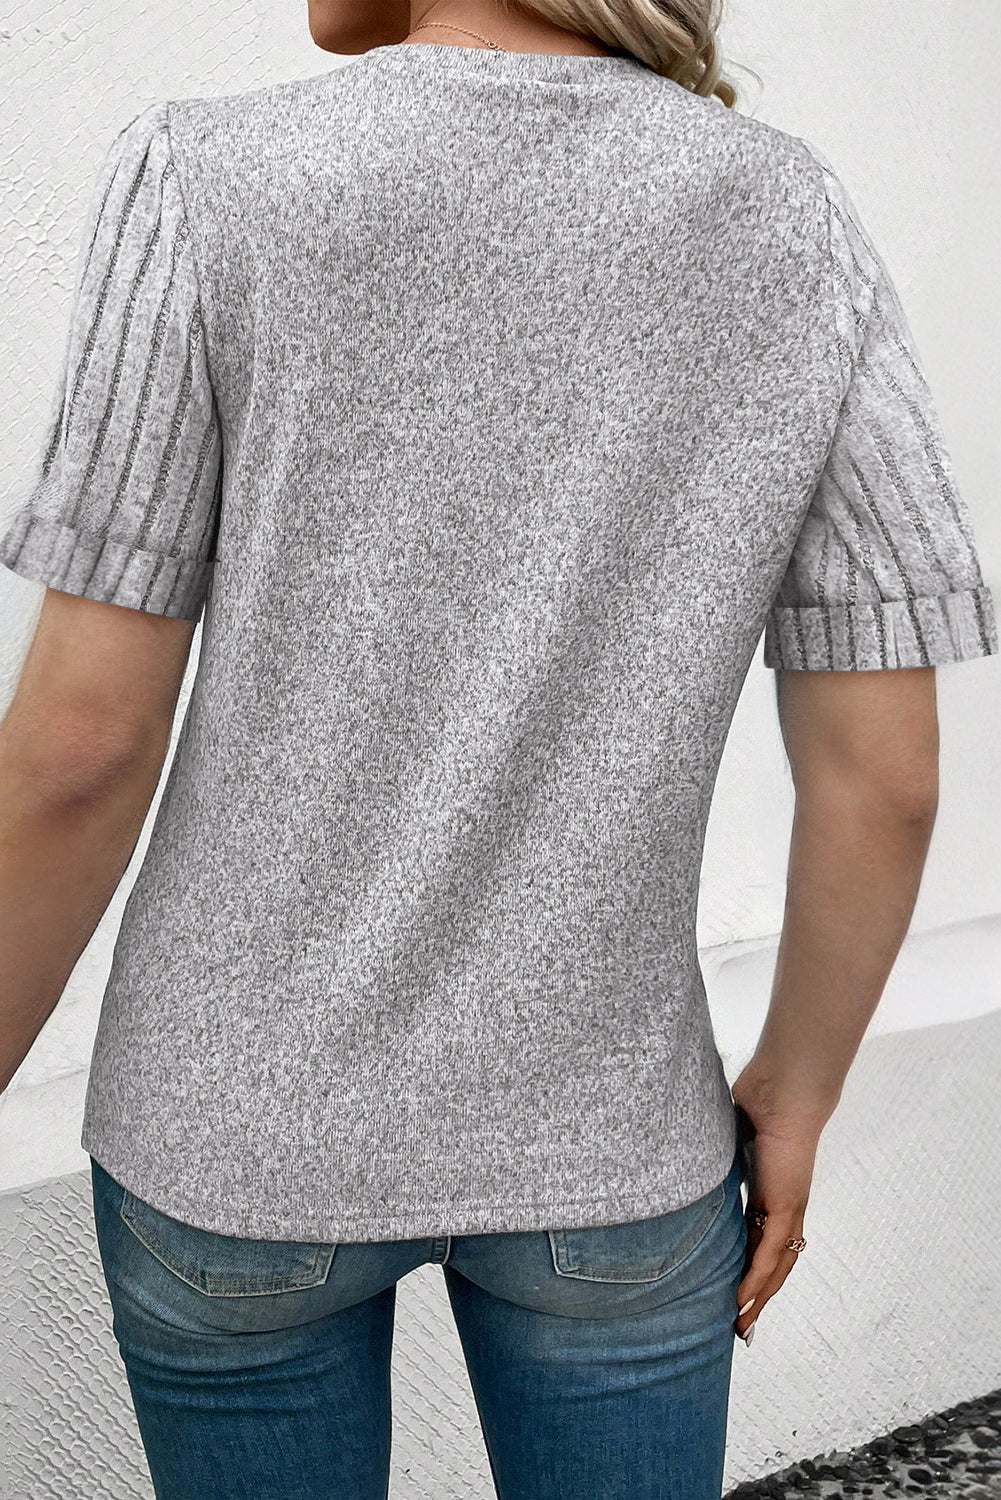 Hellrosa T-Shirt mit gerippten Spleißärmeln und Rundhalsausschnitt